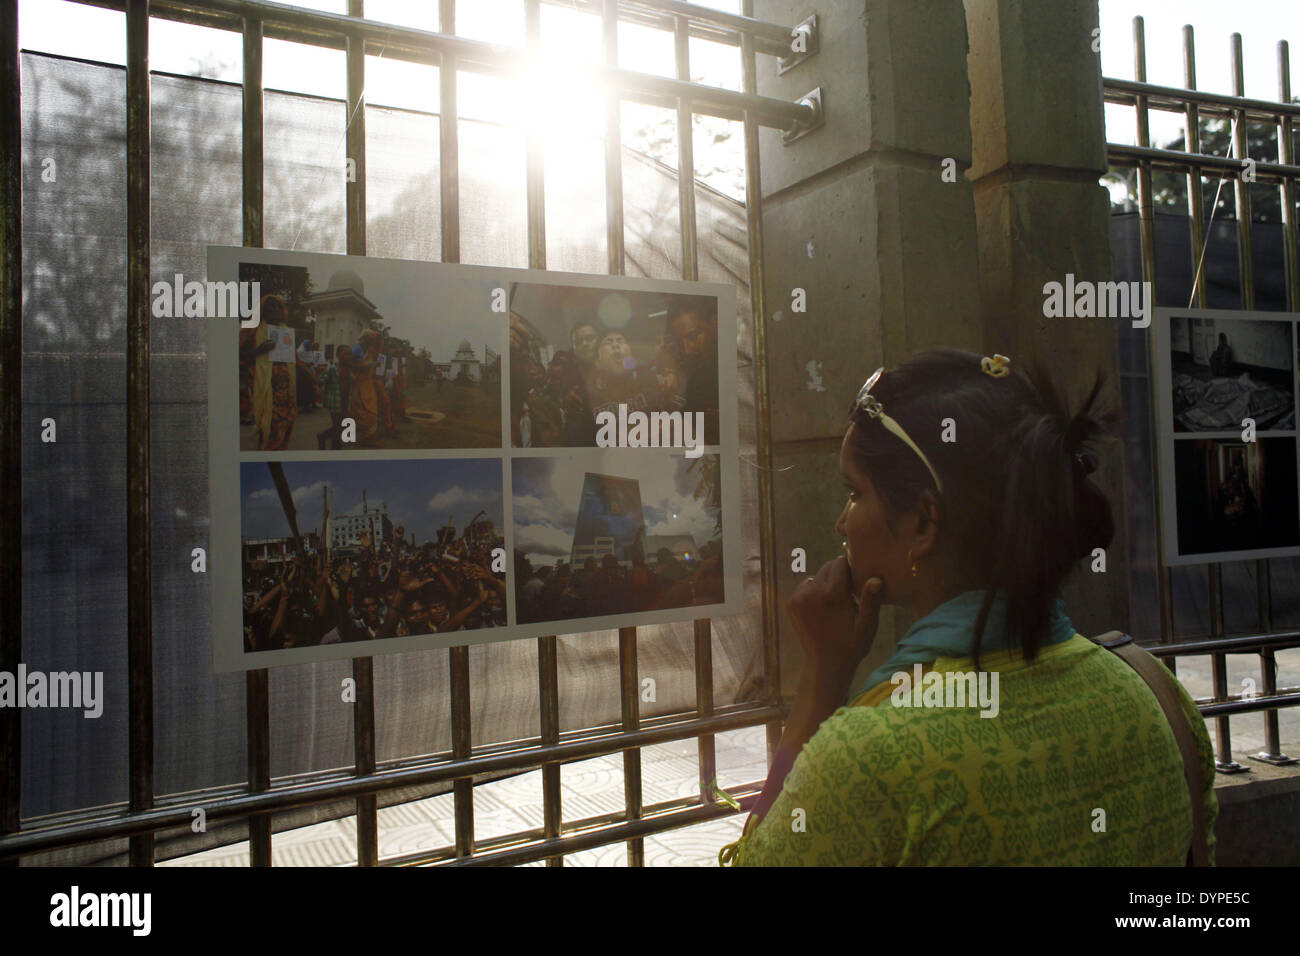 Dhaka, Bangladesch. 23. April 2014. Eine Gruppe von Fotojournalist her nationale & internationaler Medien in Bangladesch wird ein Jahr unvergessliche Tragödie von Rana Plaza, im Gedenken an seine Opfer durch die Veranstaltung einer Fotoausstellung mit dem Titel '' Aftermath: Rana Plaza'' Respekt zollen. Die Ausstellung eröffnet im 23. April 2014 bei Sohrawardi Uddyan, Dhaka.William Hanna, präsentierte Ambasedor Europäische Union Delegation nach Bangladesch als Chef Gast & Hanne Fugl Eskjaer, Botschafter der Botschaft von Dänemark in Bangladesch präsentiert als special Guest. (Kredit-Bild: © Zakir Hossain Chowdhury / Stockfoto